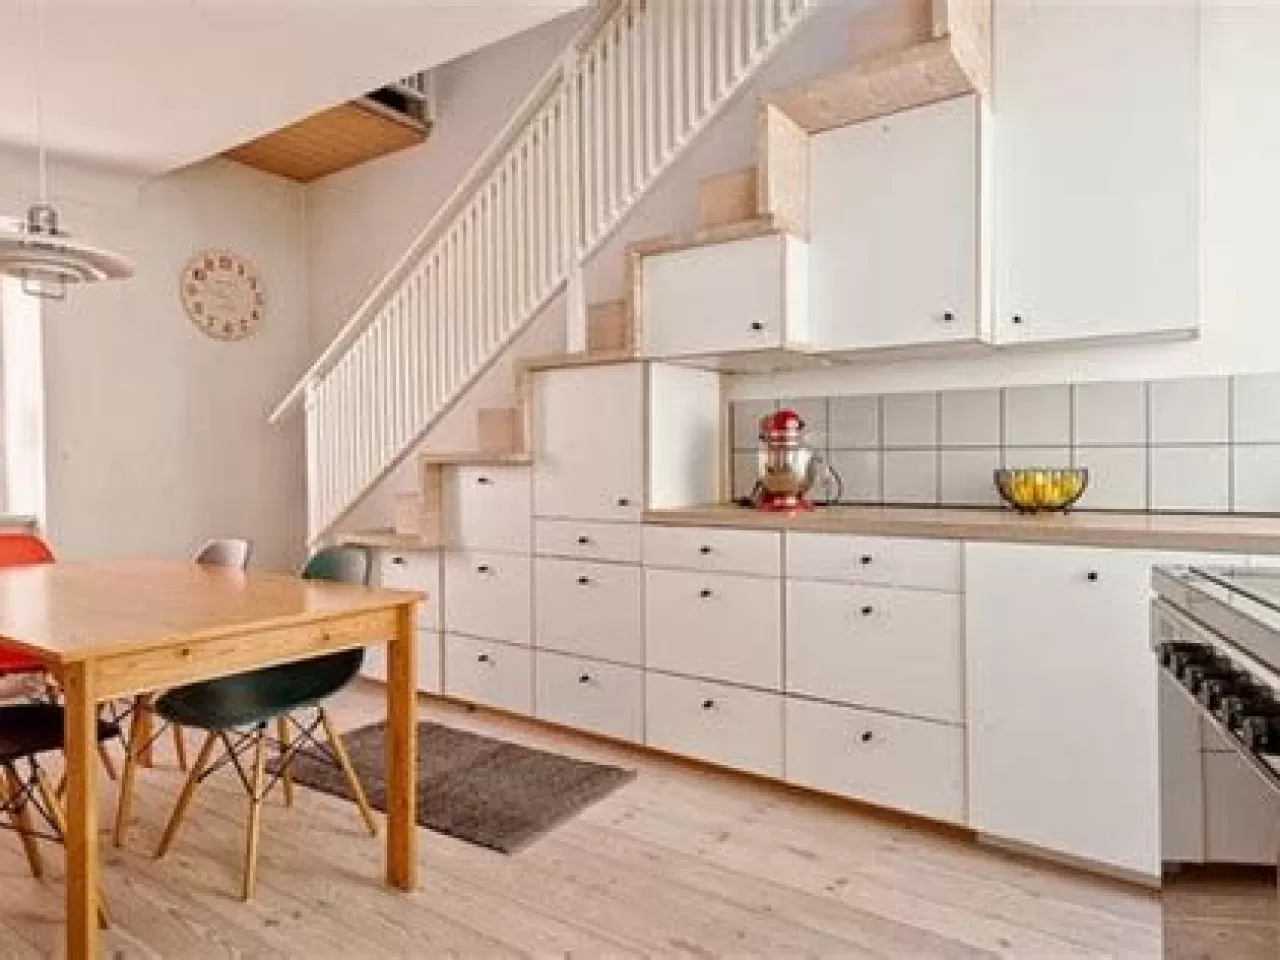 Кухни на втором этаже. Кухня под лестницей. Угловая кухня под лестницей. Кухонный гарнитур под лестницей. Проект кухни под лестницей.